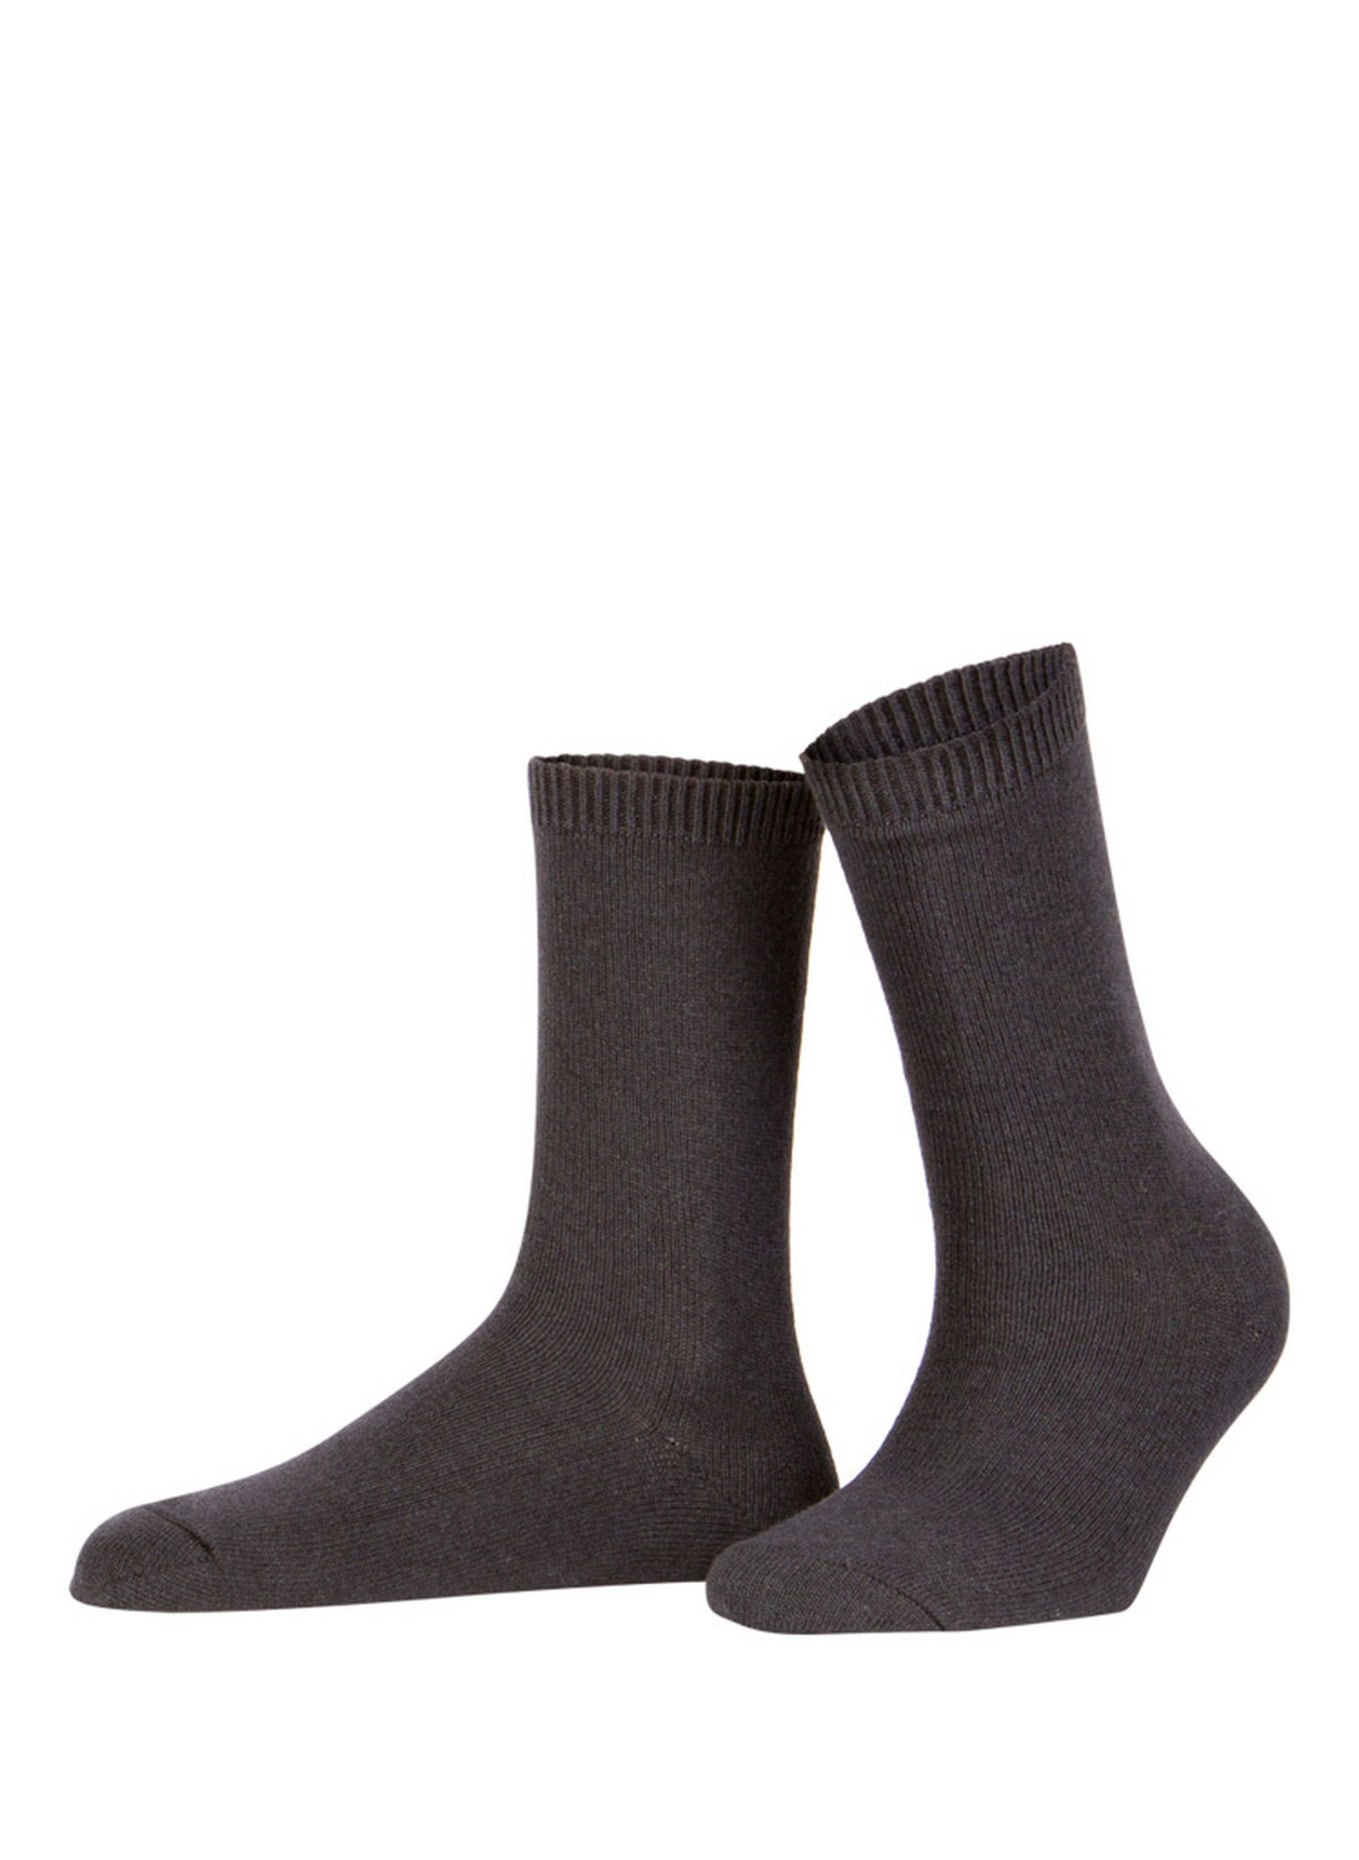 FALKE Socken COSY WOOL mit Merinowolle , Farbe: 3089 ANTHRA.MEL (Bild 1)